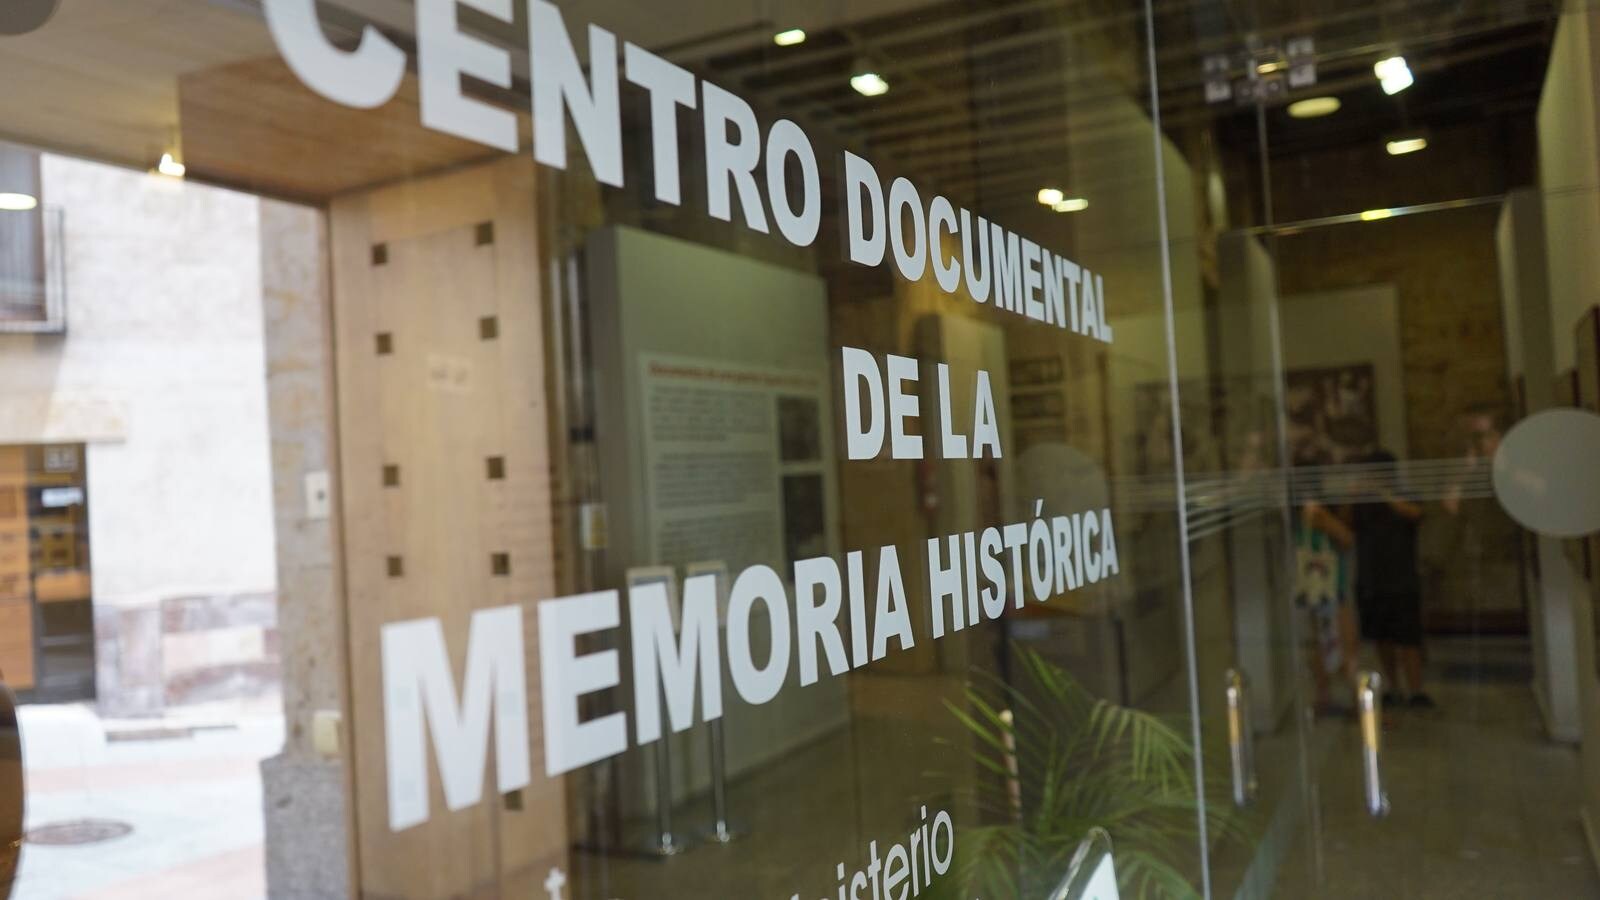 Con sede en Salamanca, se presenta como uno de los lugares con mayor volumen de información referente a la Guerra Civil y la represión